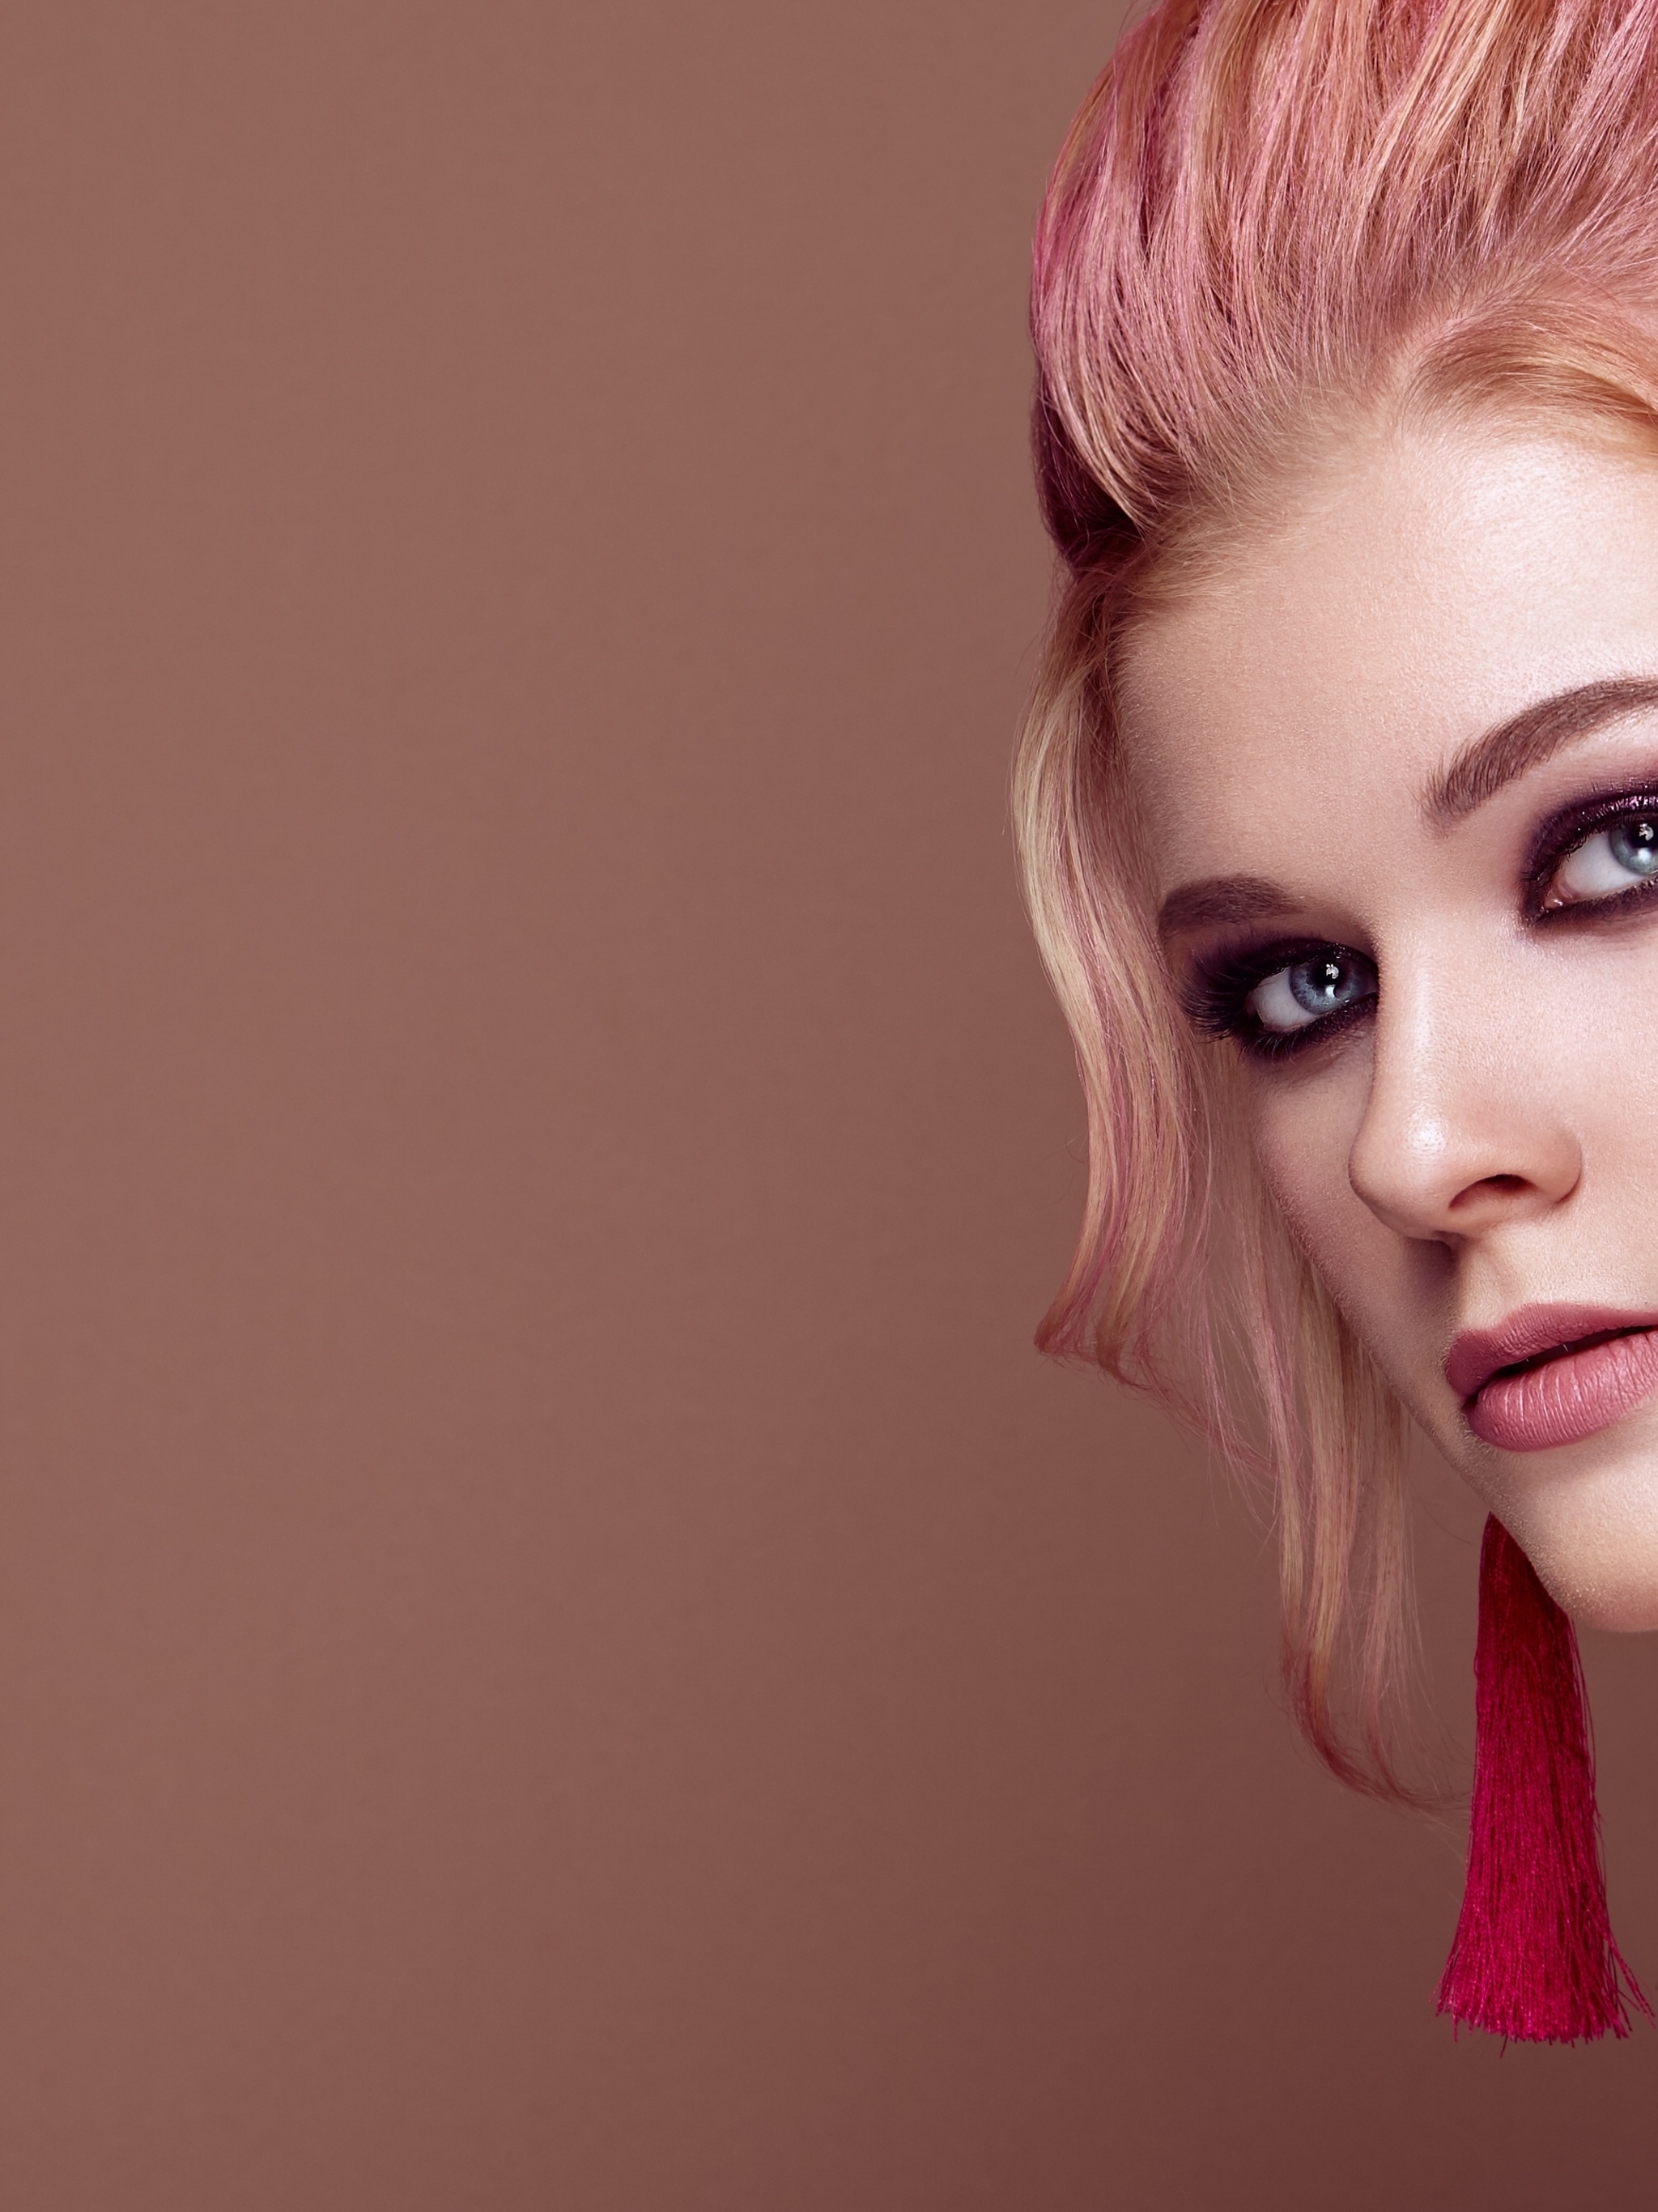 Image: Girl, face, makeup, model, pink hair, the earrings-brush